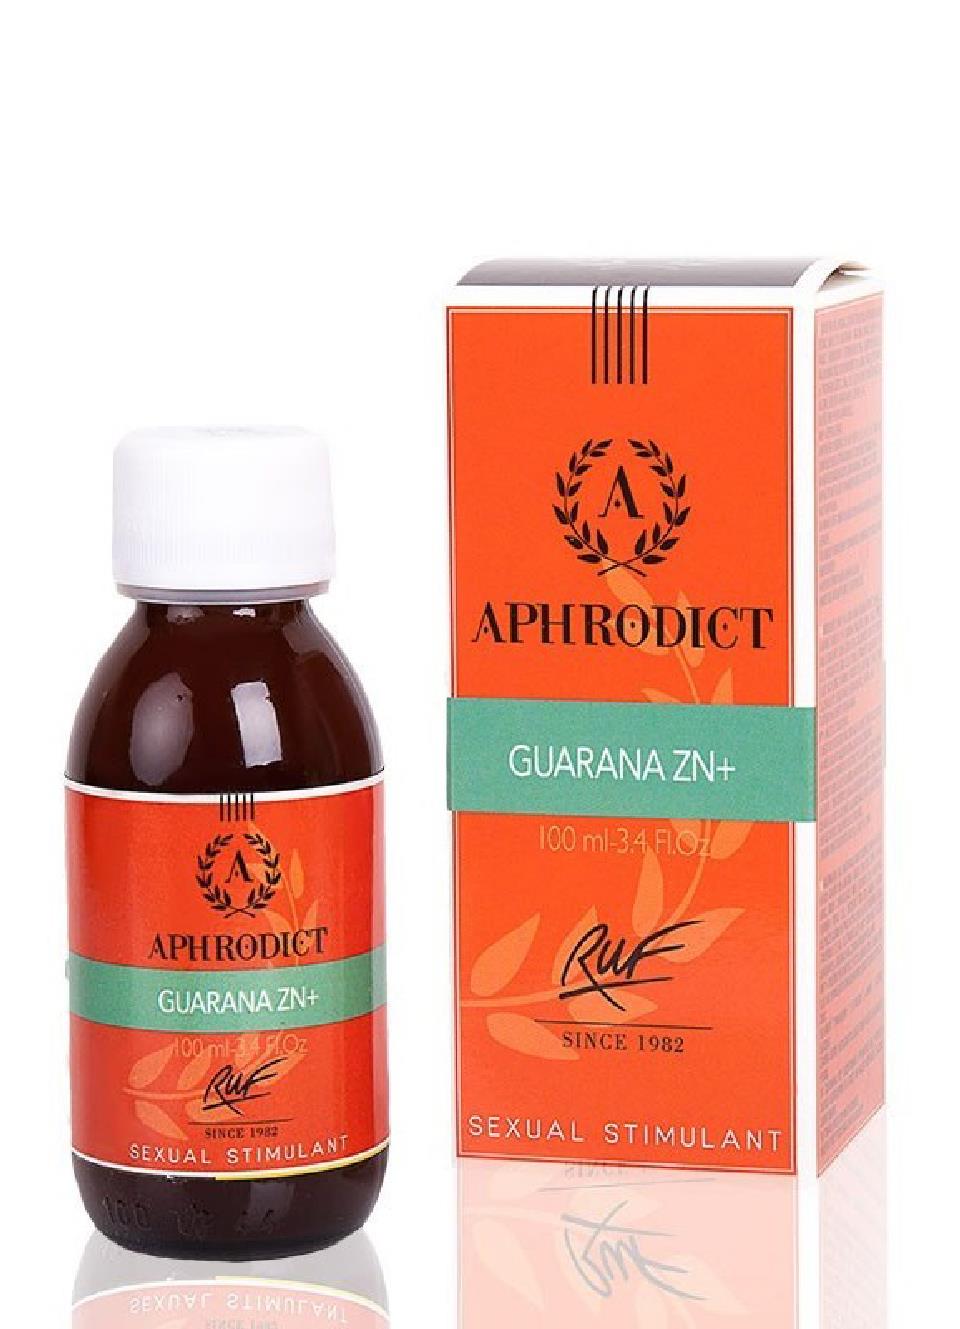 APHRODICT GUARANA ZN + 100 ml